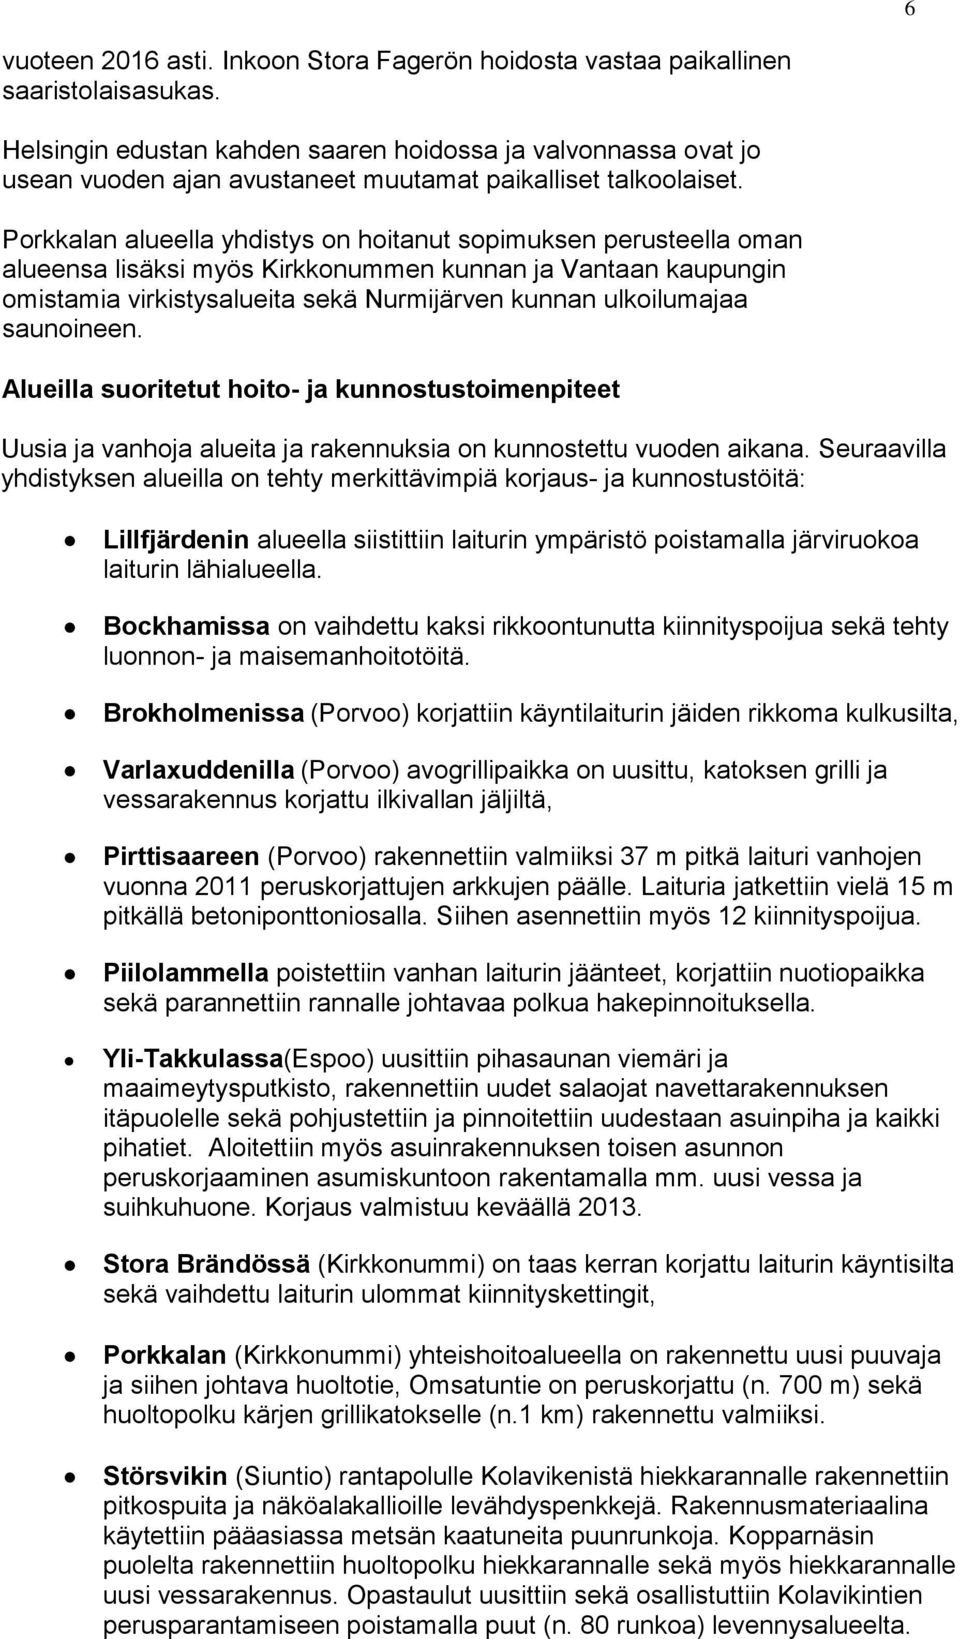 Porkkalan alueella yhdistys on hoitanut sopimuksen perusteella oman alueensa lisäksi myös Kirkkonummen kunnan ja Vantaan kaupungin omistamia virkistysalueita sekä Nurmijärven kunnan ulkoilumajaa